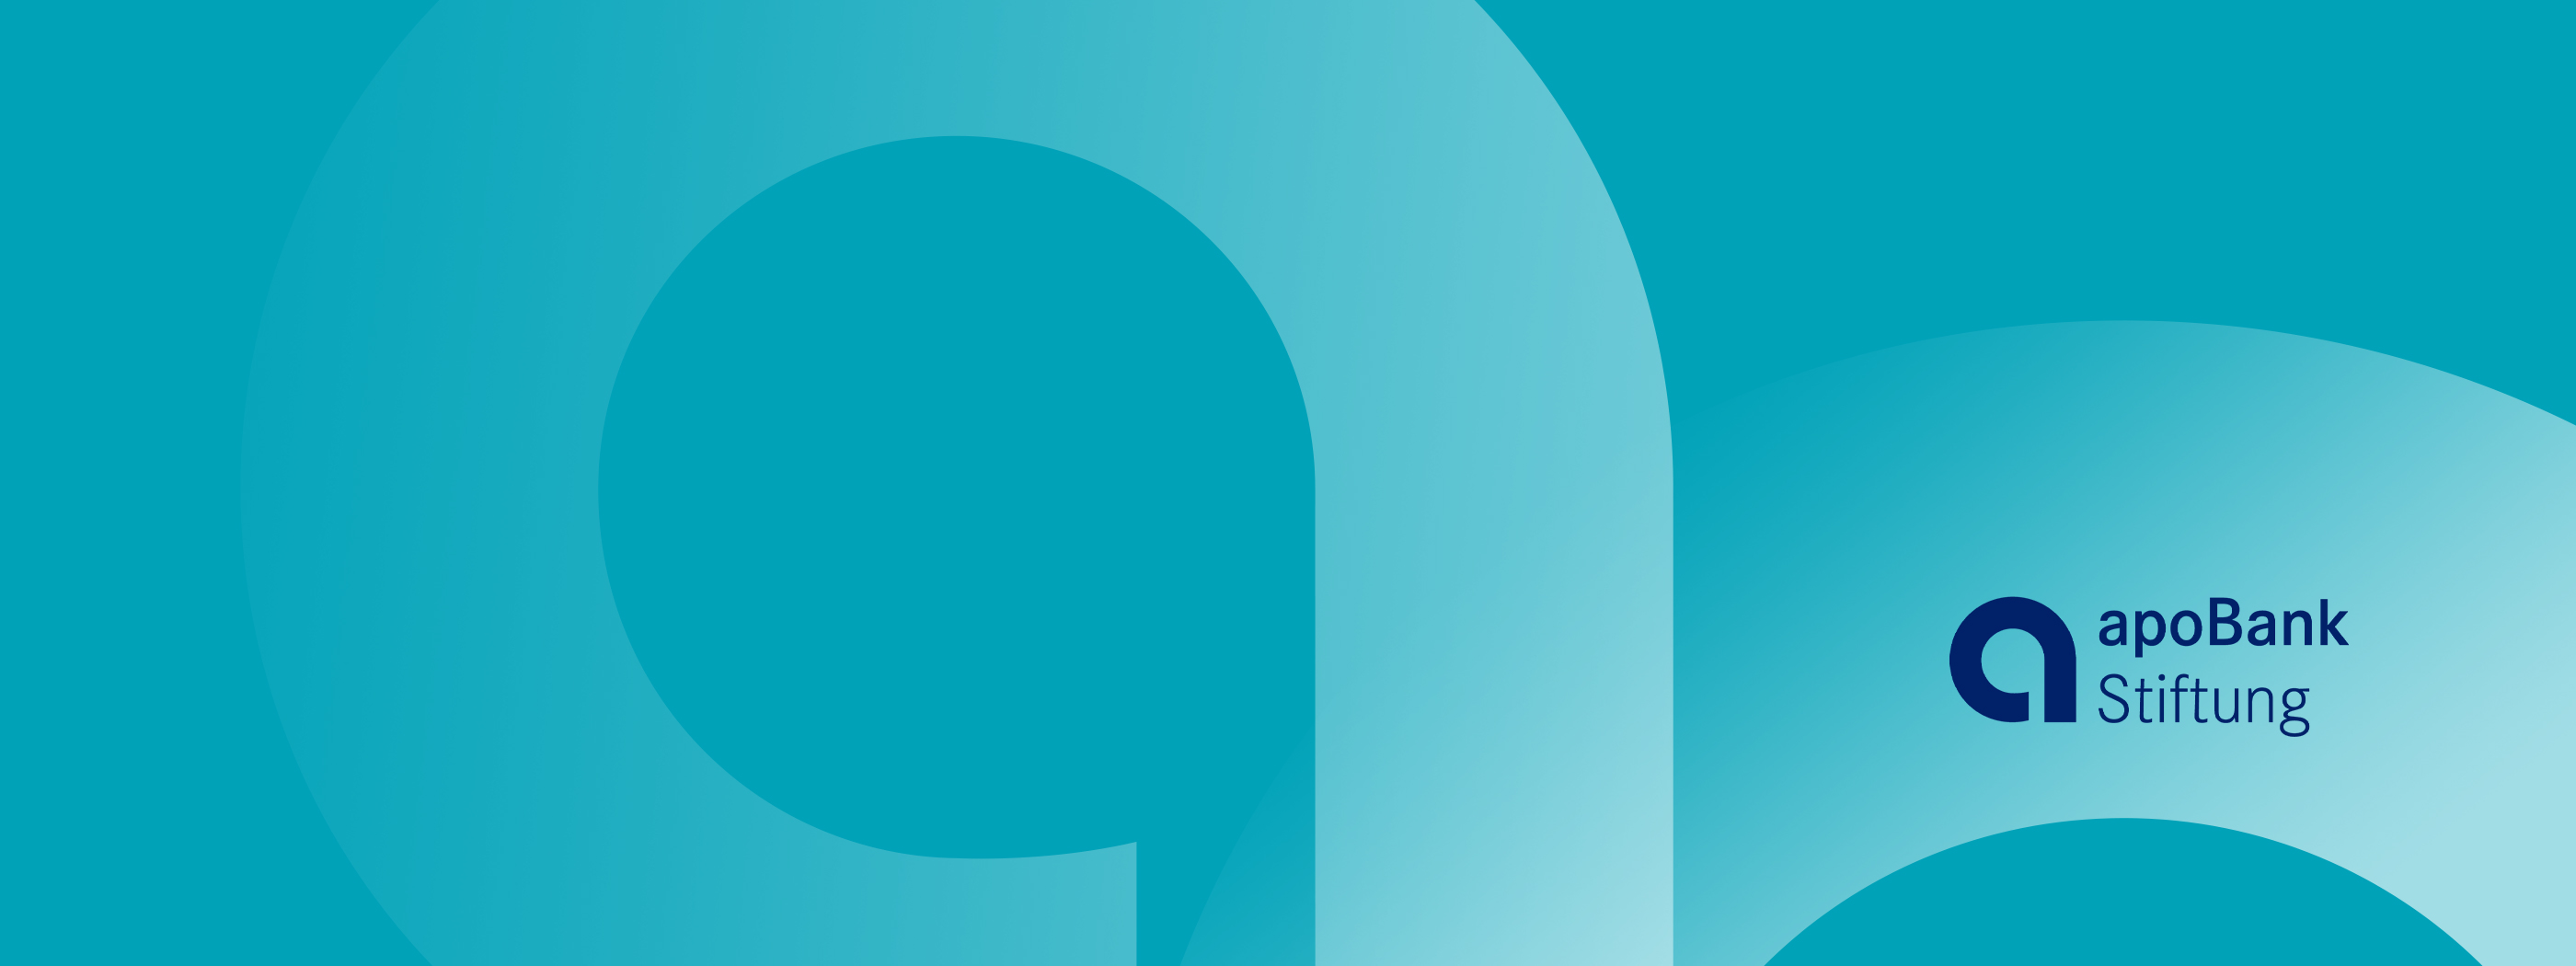 Das Logo der apoBank-Stiftung auf hellblauem Hintergrund